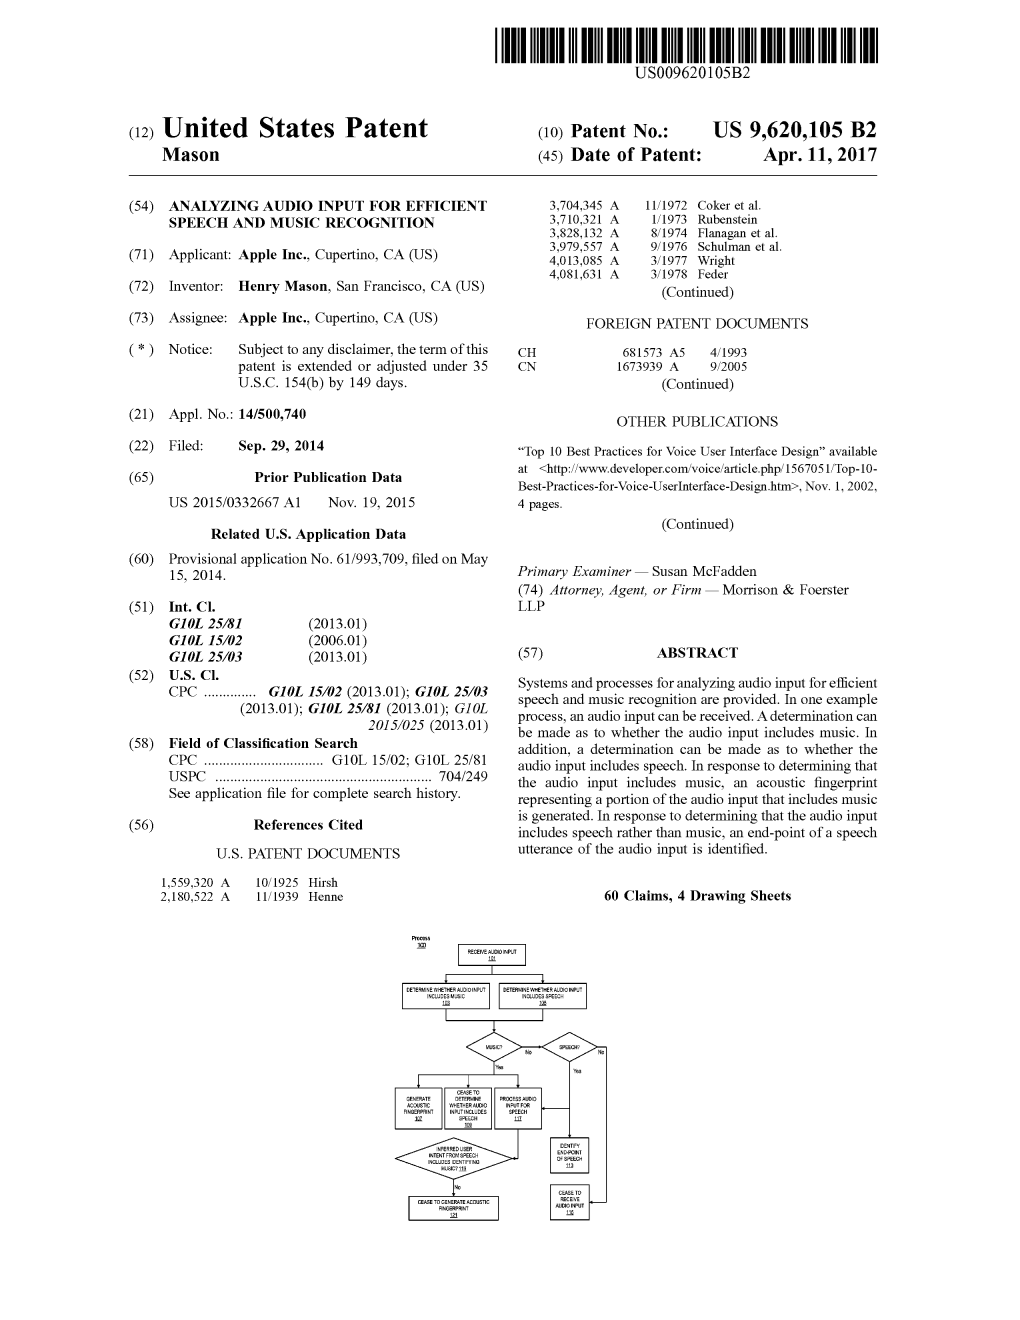 United States Patent (10) Patent No.: US 9,620,105 B2 Mason (45) Date of Patent: Apr